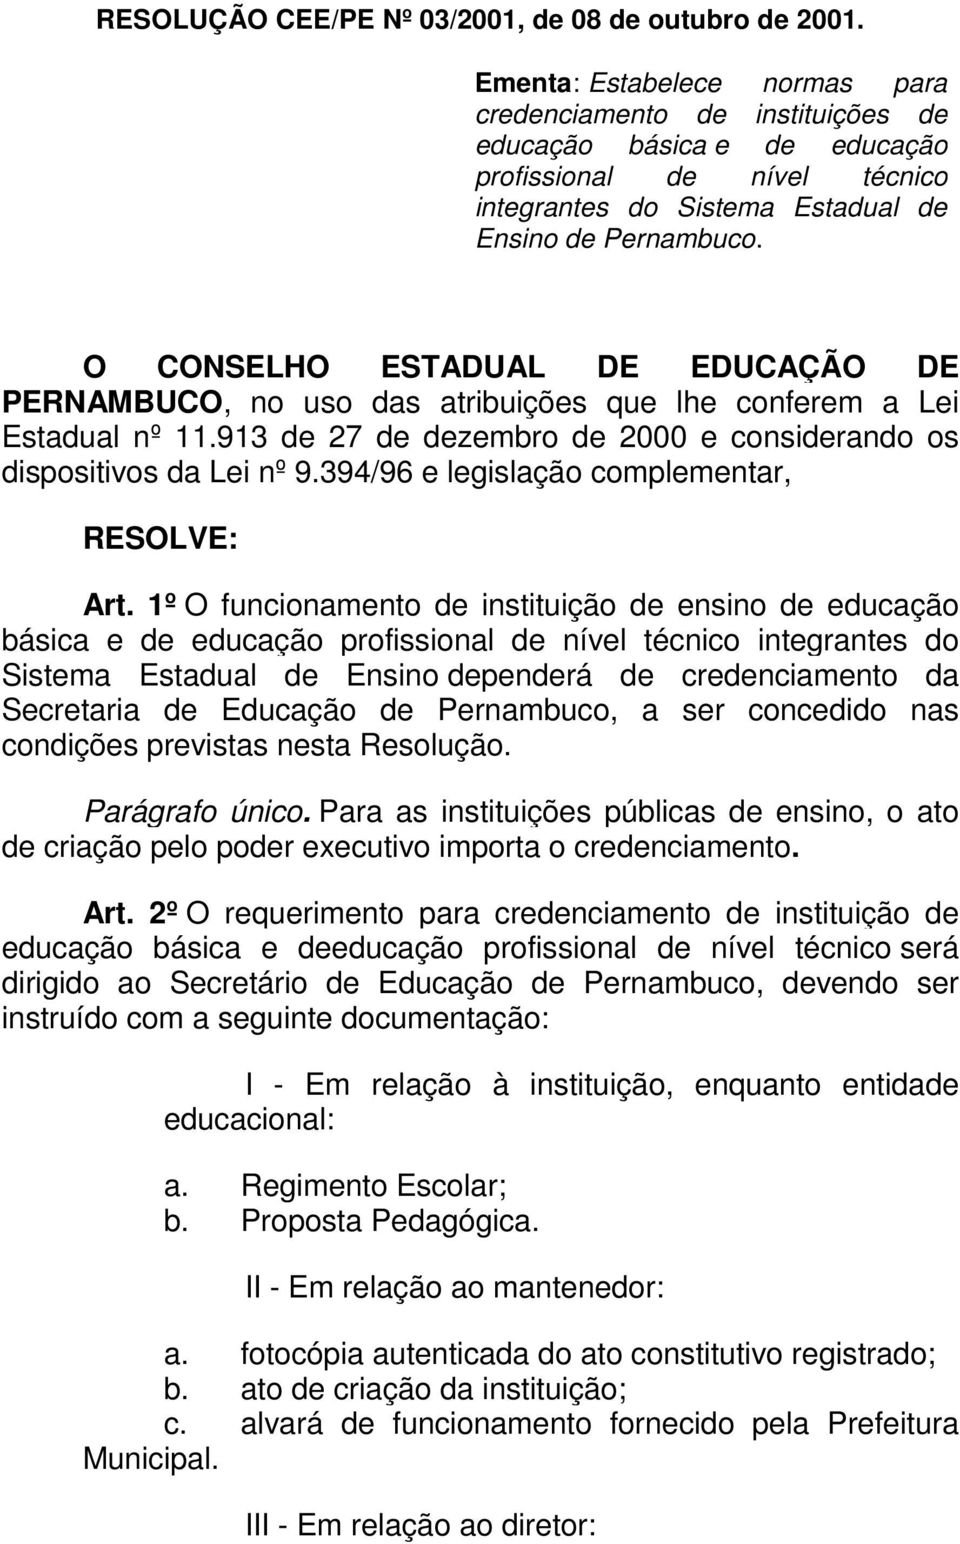 O CONSELHO ESTADUAL DE EDUCAÇÃO DE PERNAMBUCO, no uso das atribuições que lhe conferem a Lei Estadual nº 11.913 de 27 de dezembro de 2000 e considerando os dispositivos da Lei nº 9.